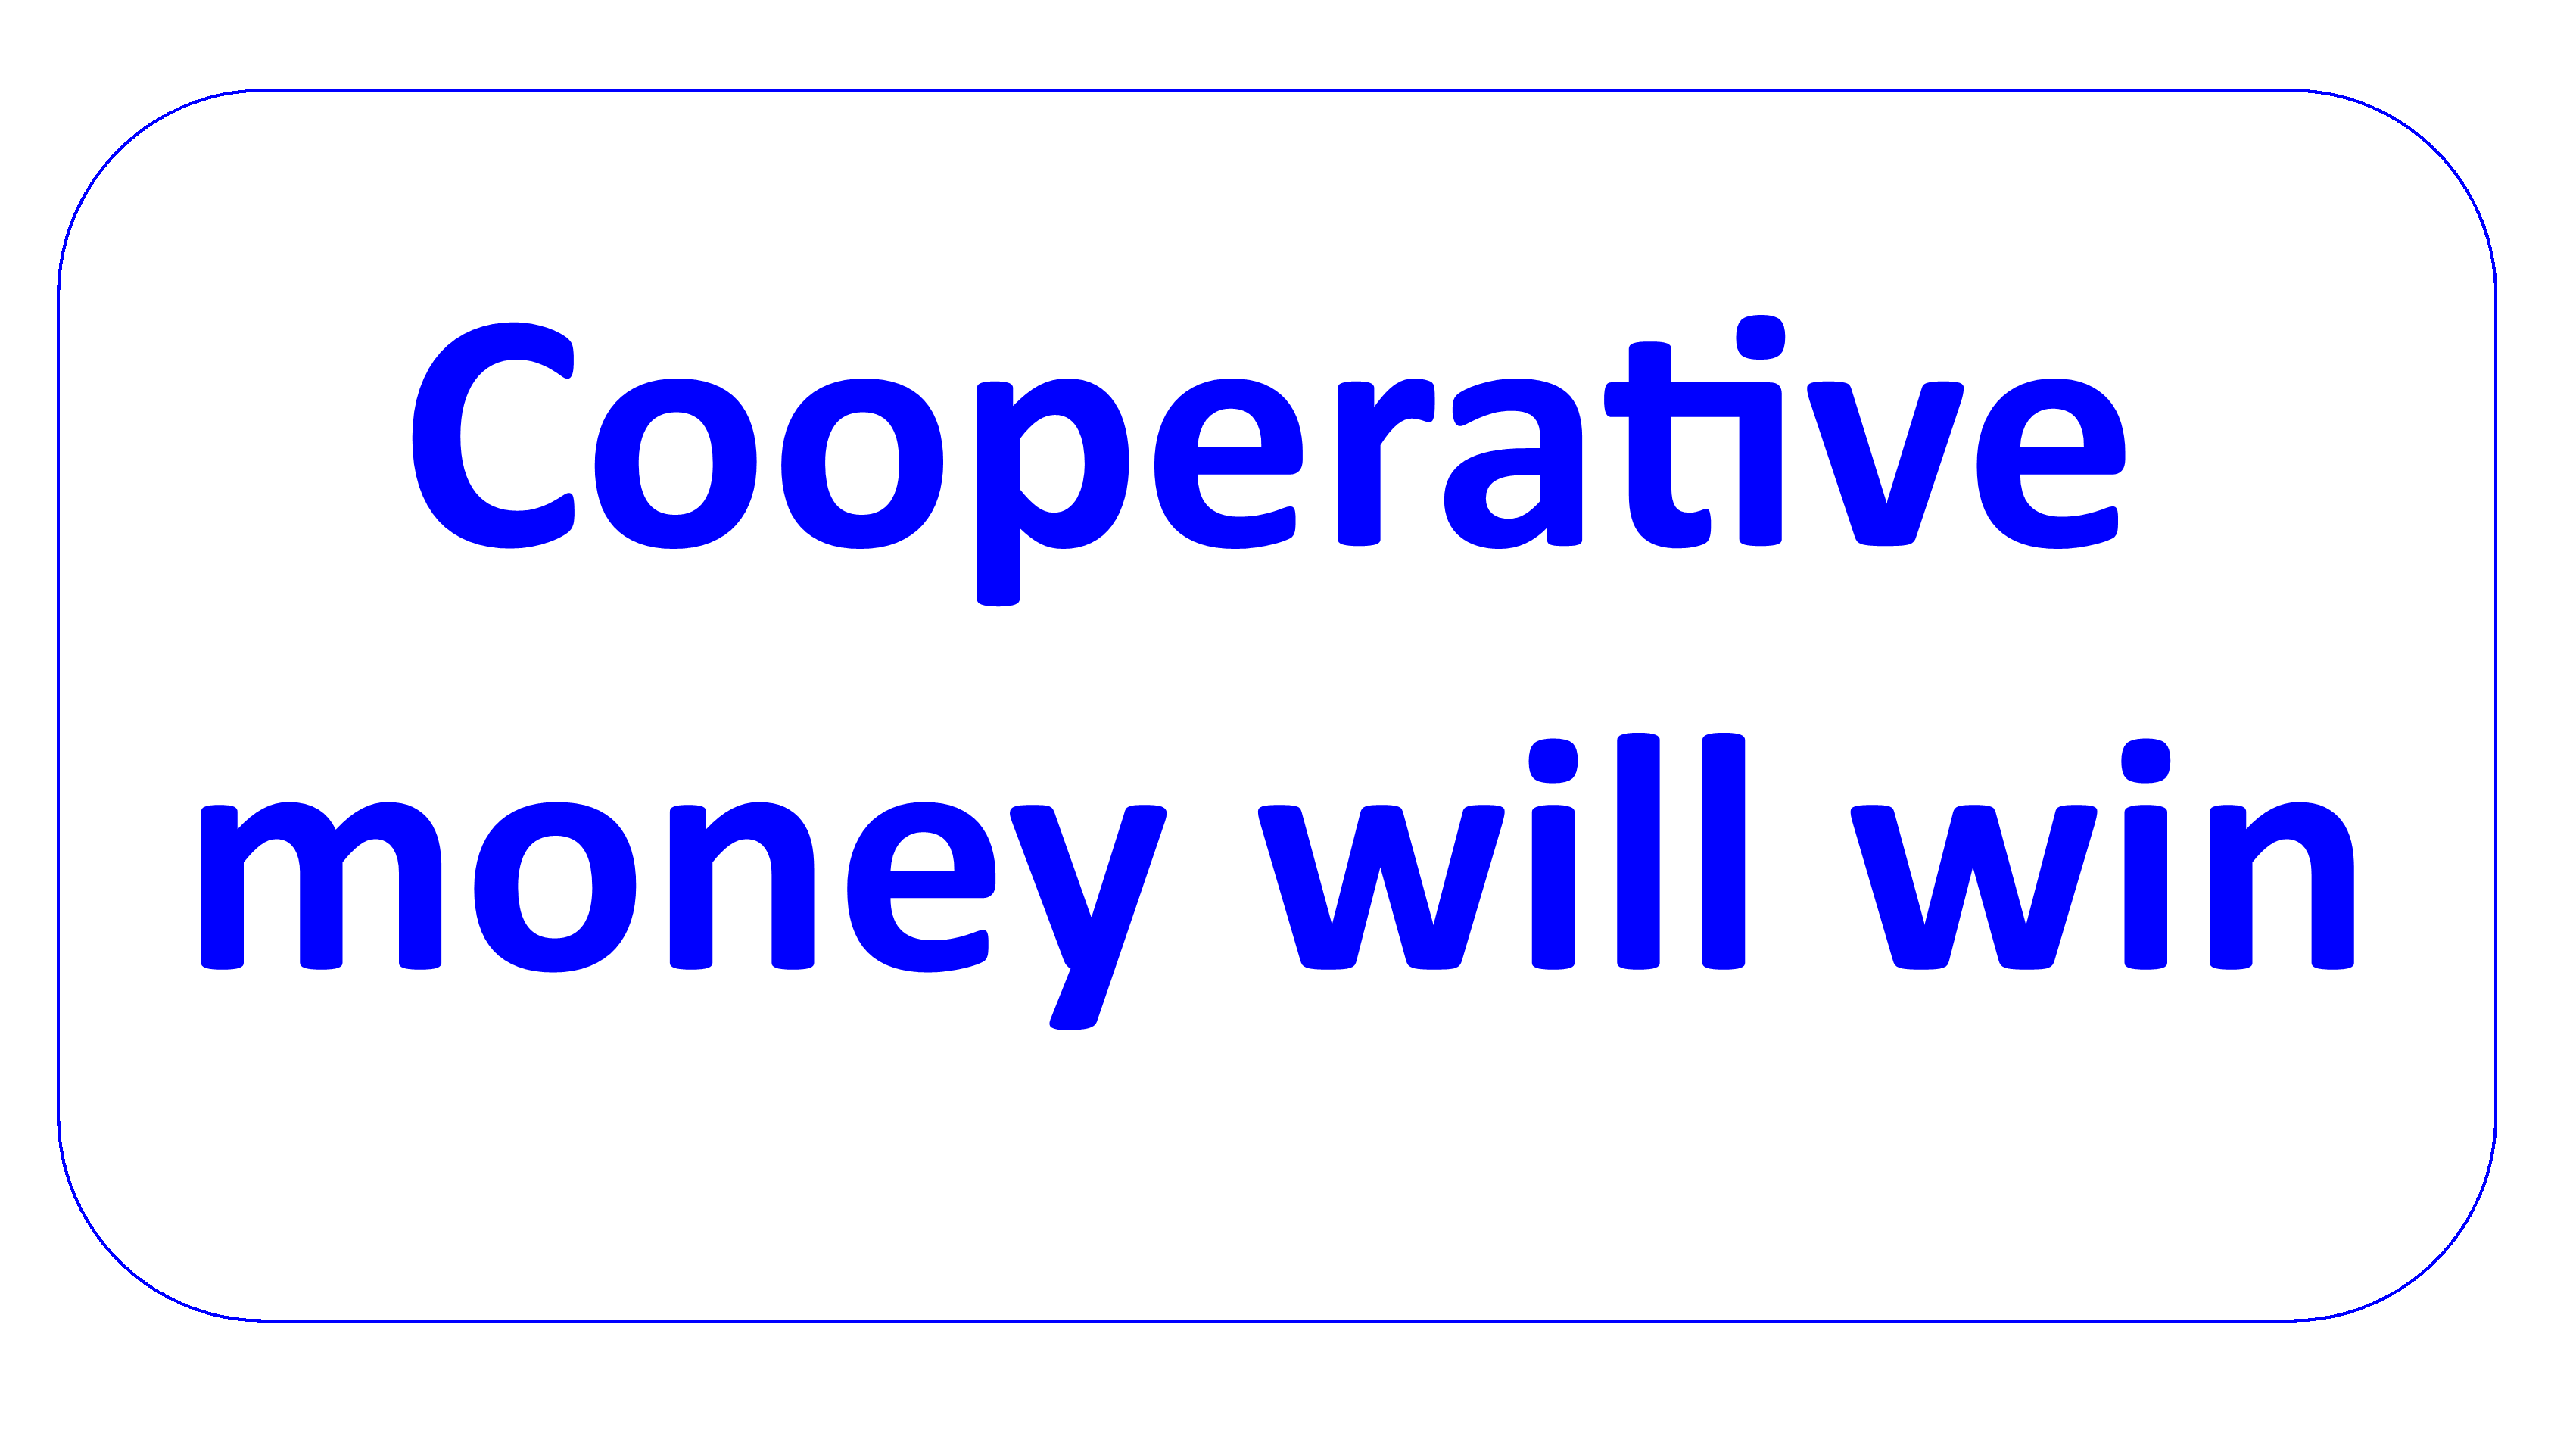 cooperative money can win en